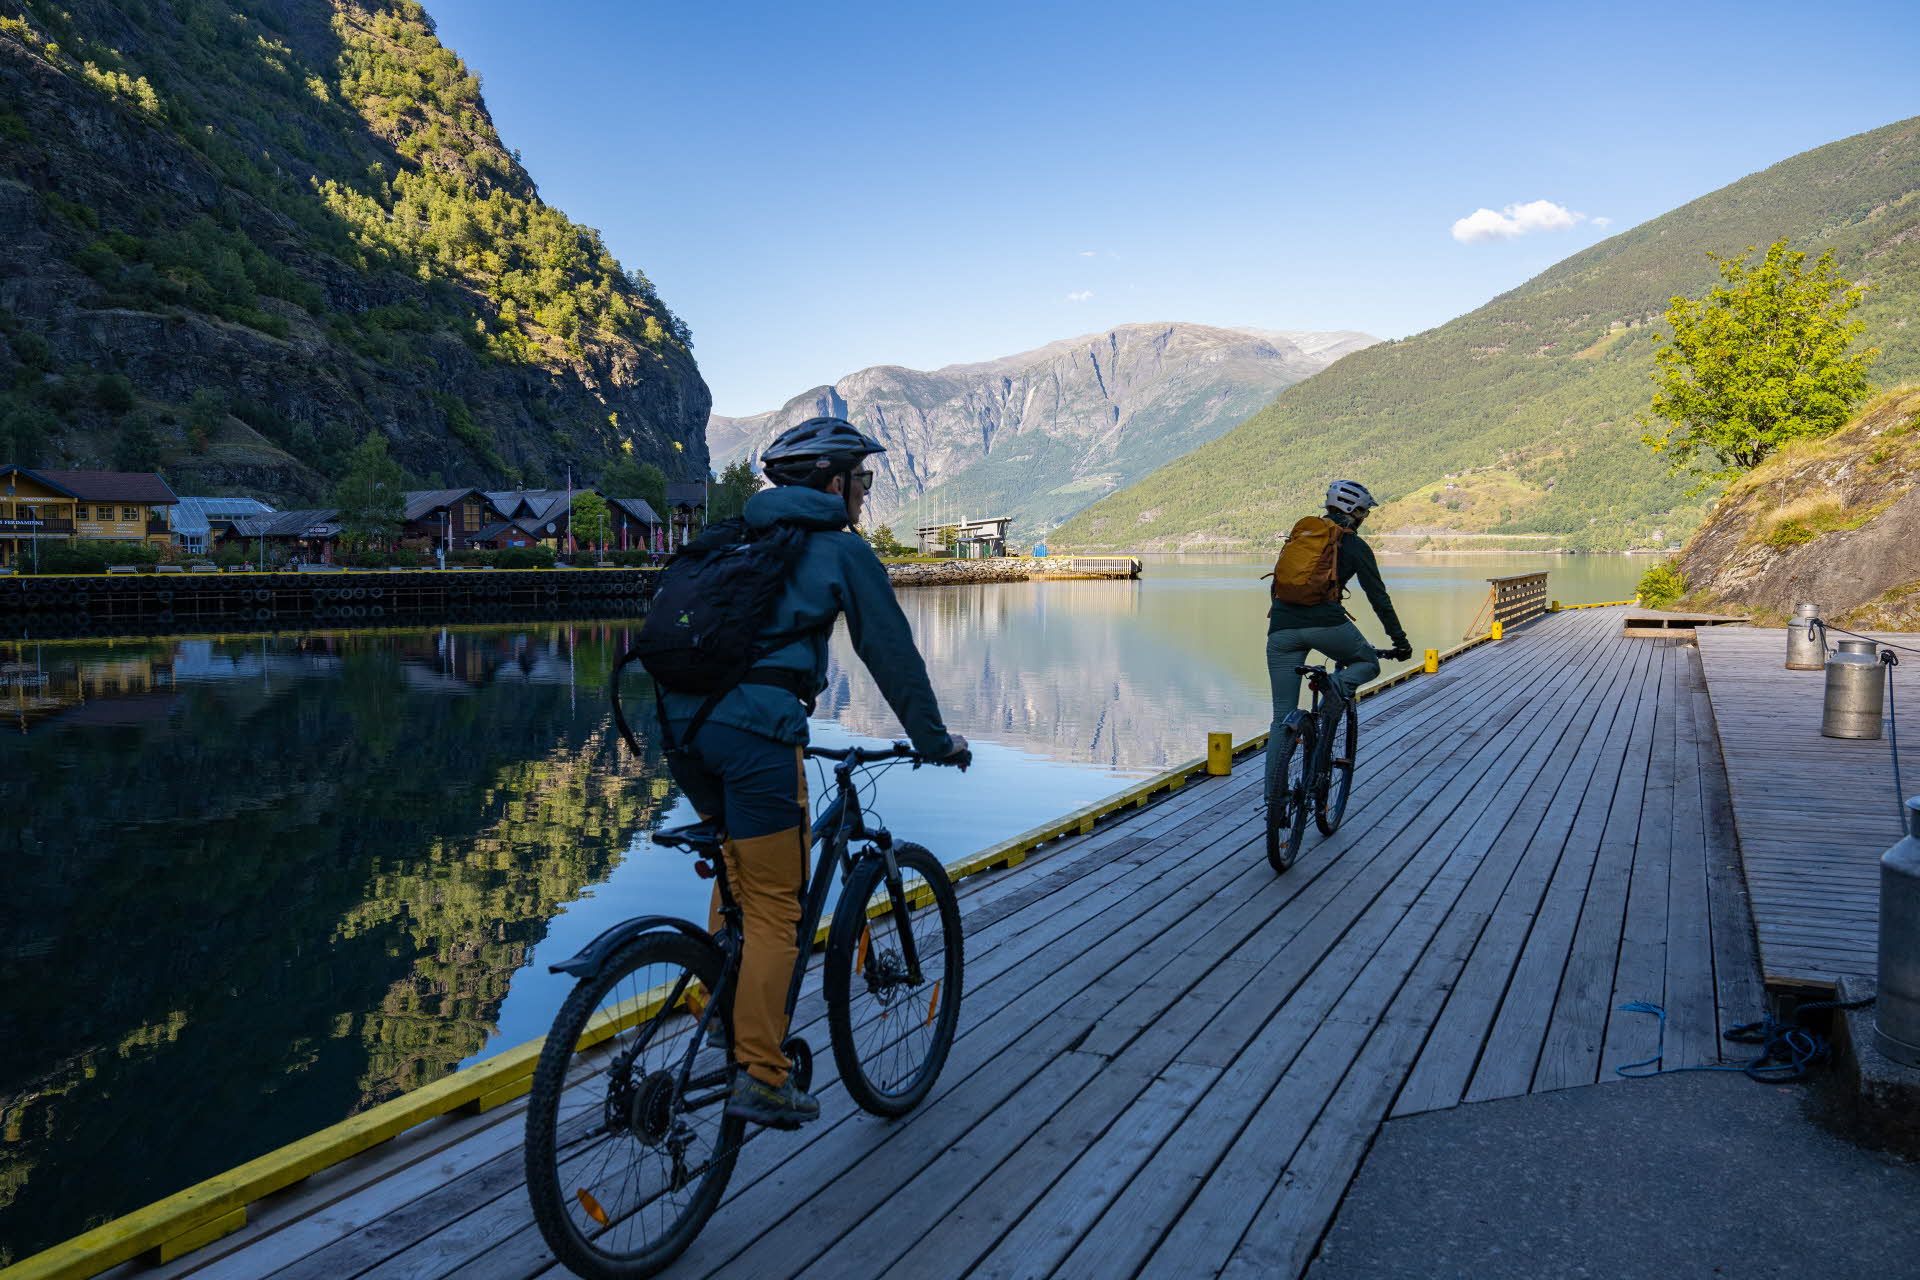 晴れたフィヨルドの景色を望むフロムの岸壁に2人のサイクリスト。